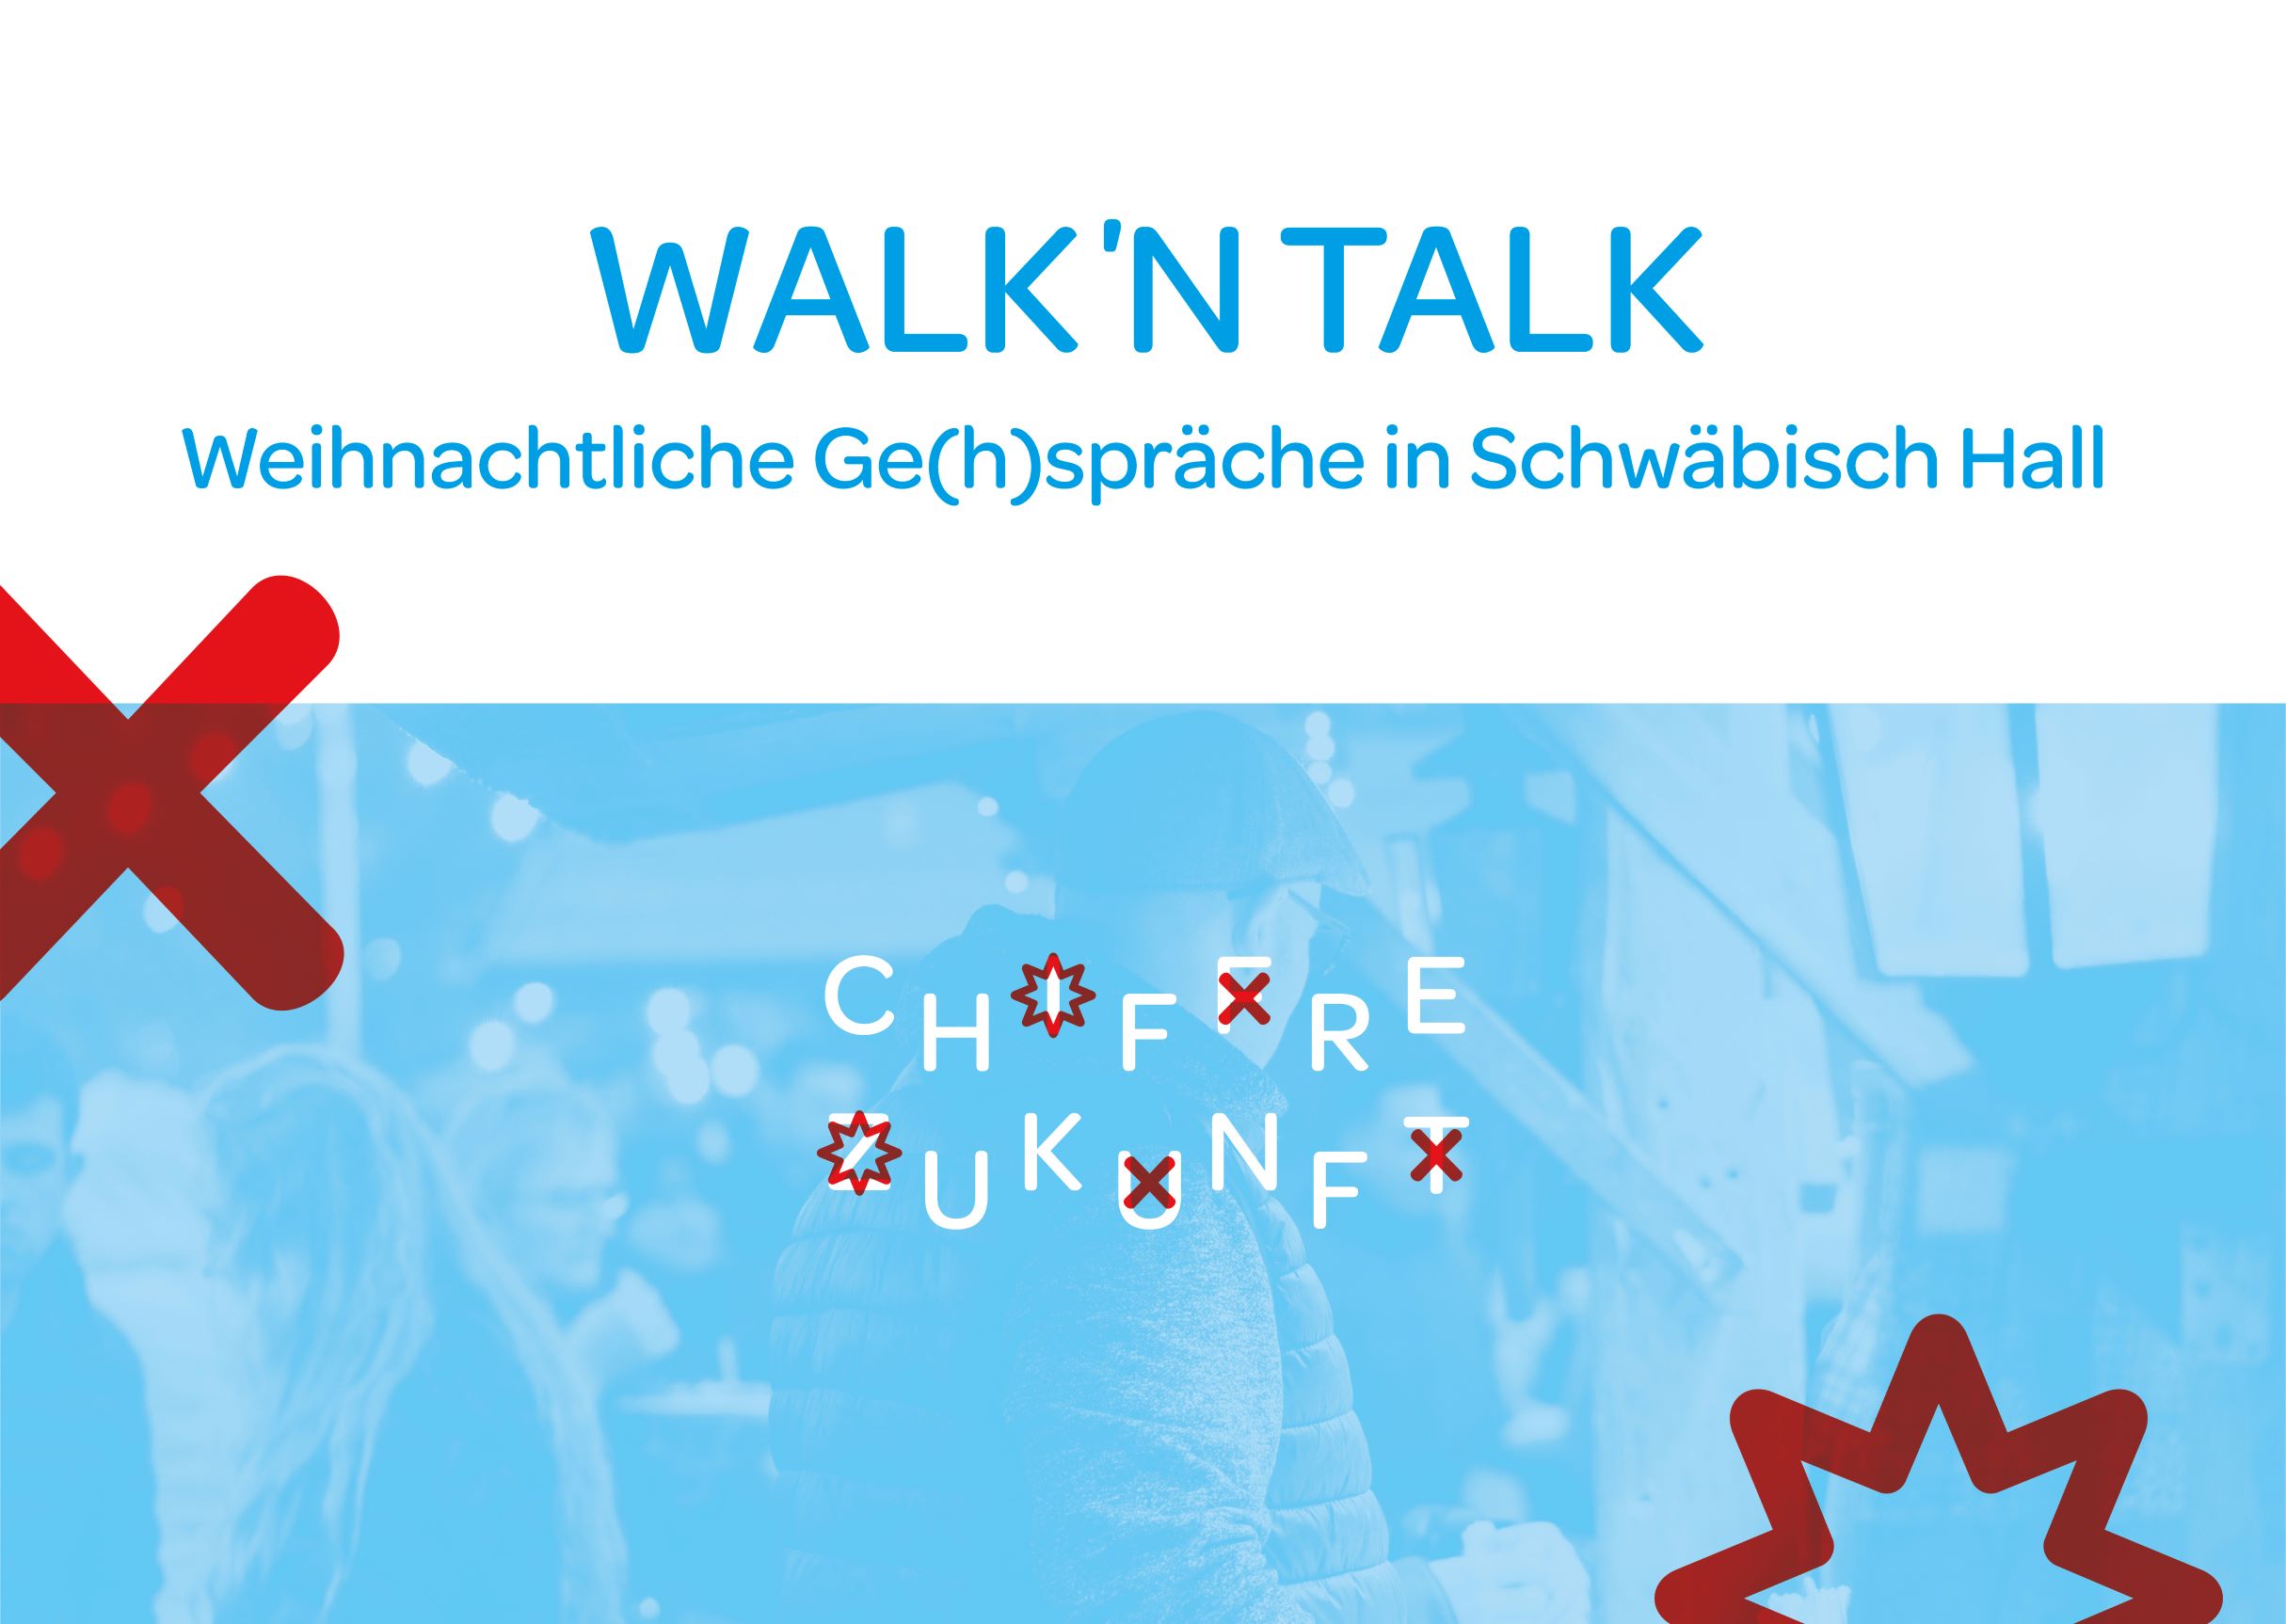 Das Bild zeigt die Informationen zur Veranstaltung mit dem Titel Walk' n Talk, Weihnachtliche Ge(h)spräche in Schwäbisch Hall. Zudem zeigt es in der unteren Hälfte ein blau eingefärbtes Bild vom Besuch eines Weihnachtsmarktes.